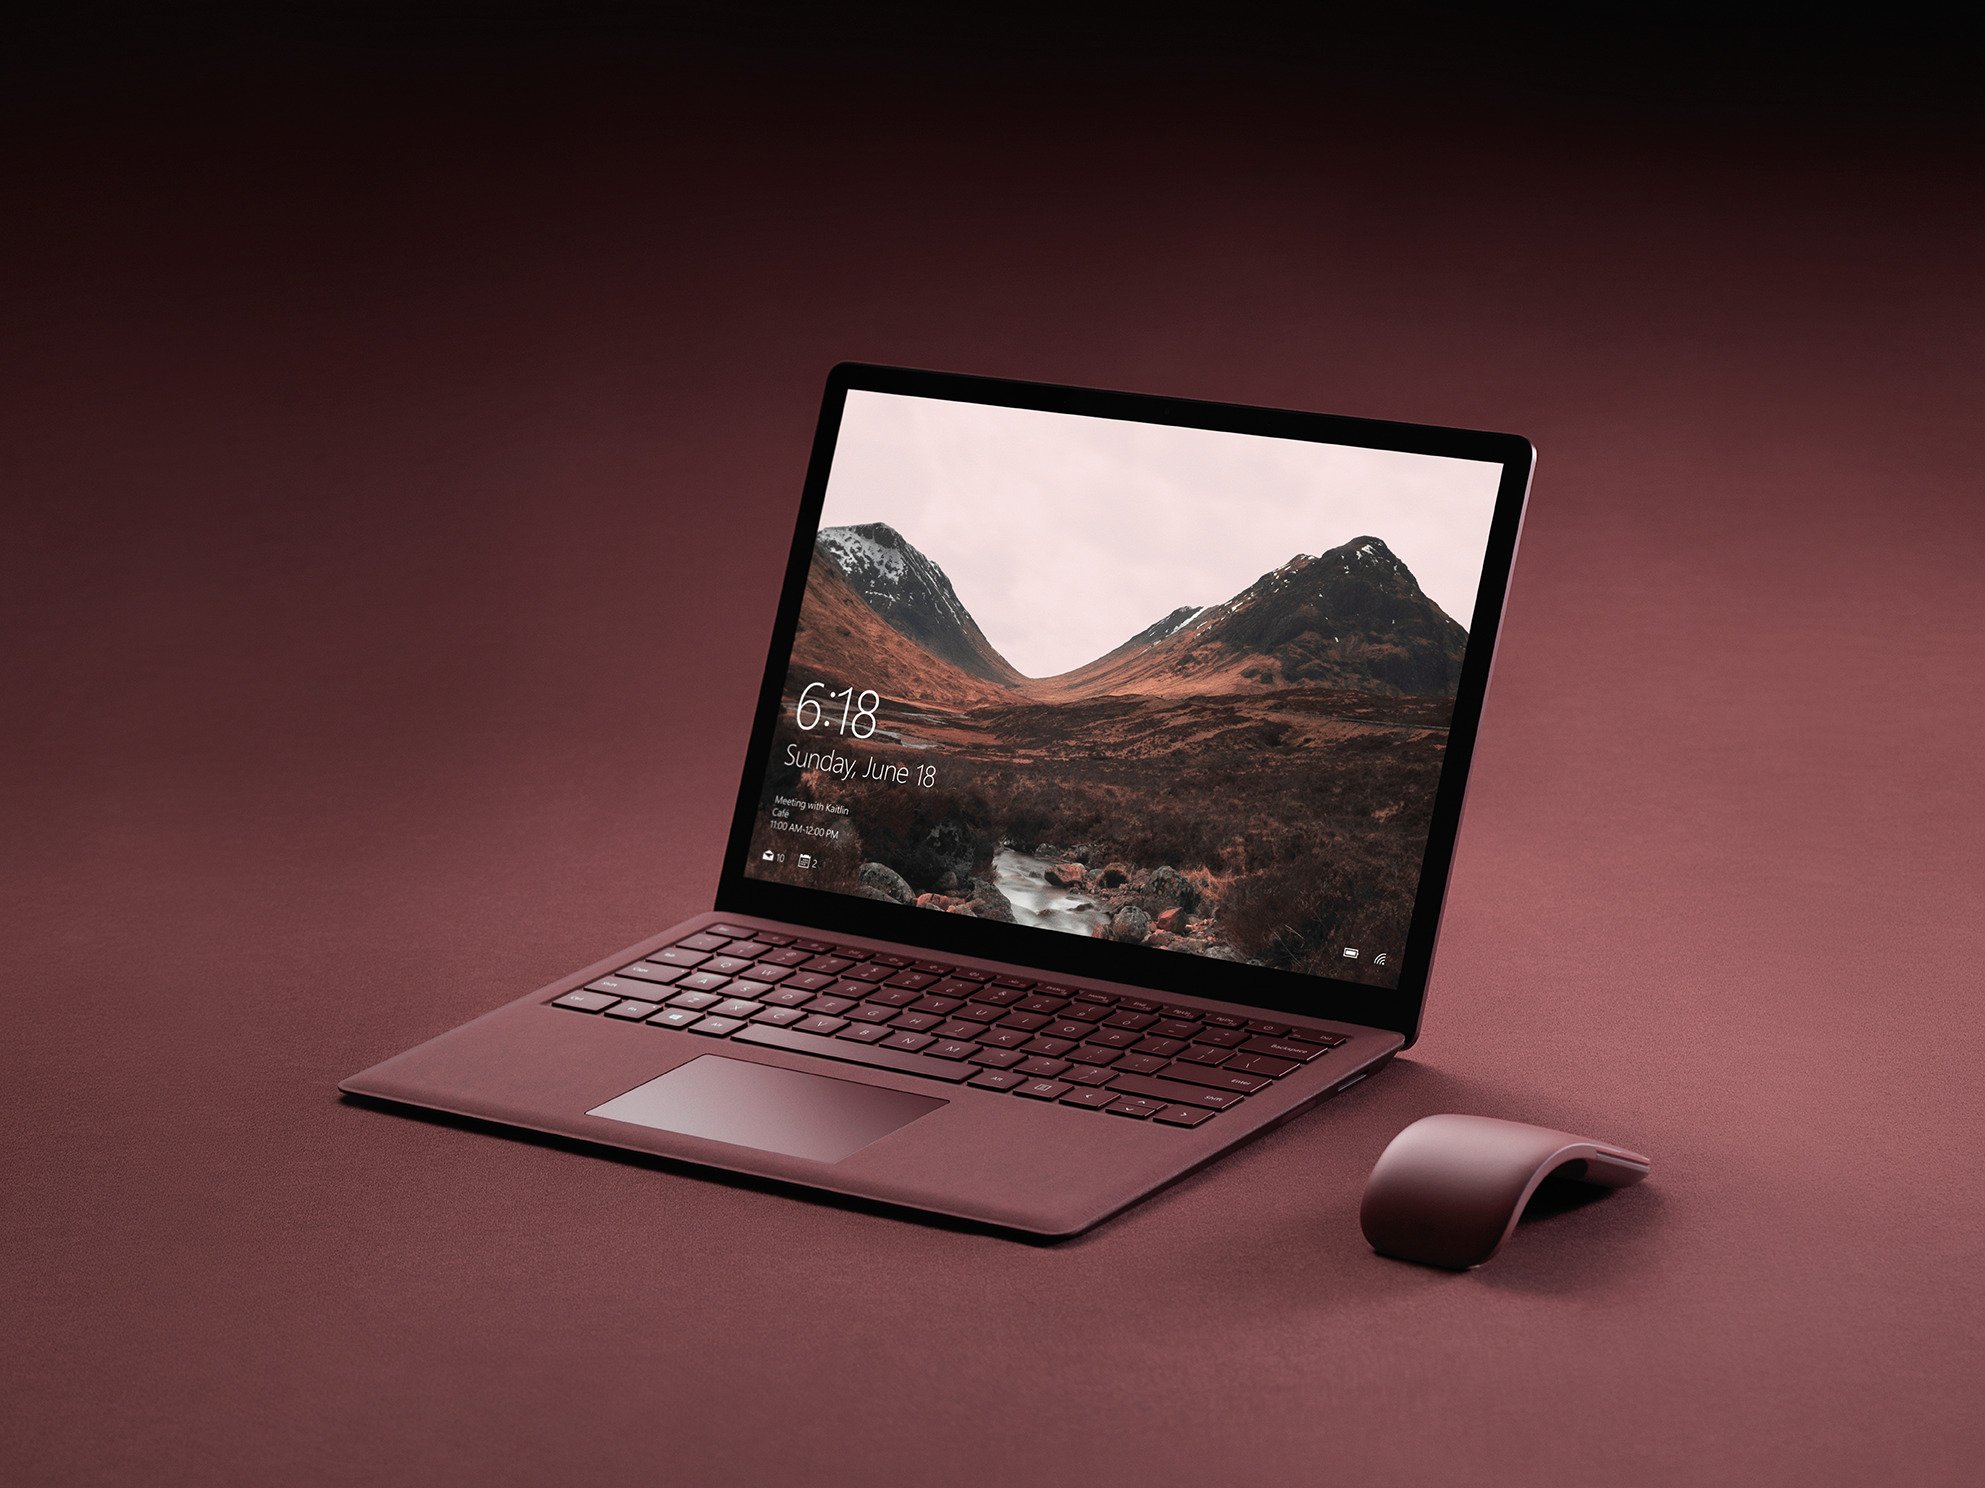 ｢Surface Laptop｣はまず20カ国で発売へ ｰ 日本での発売は未定